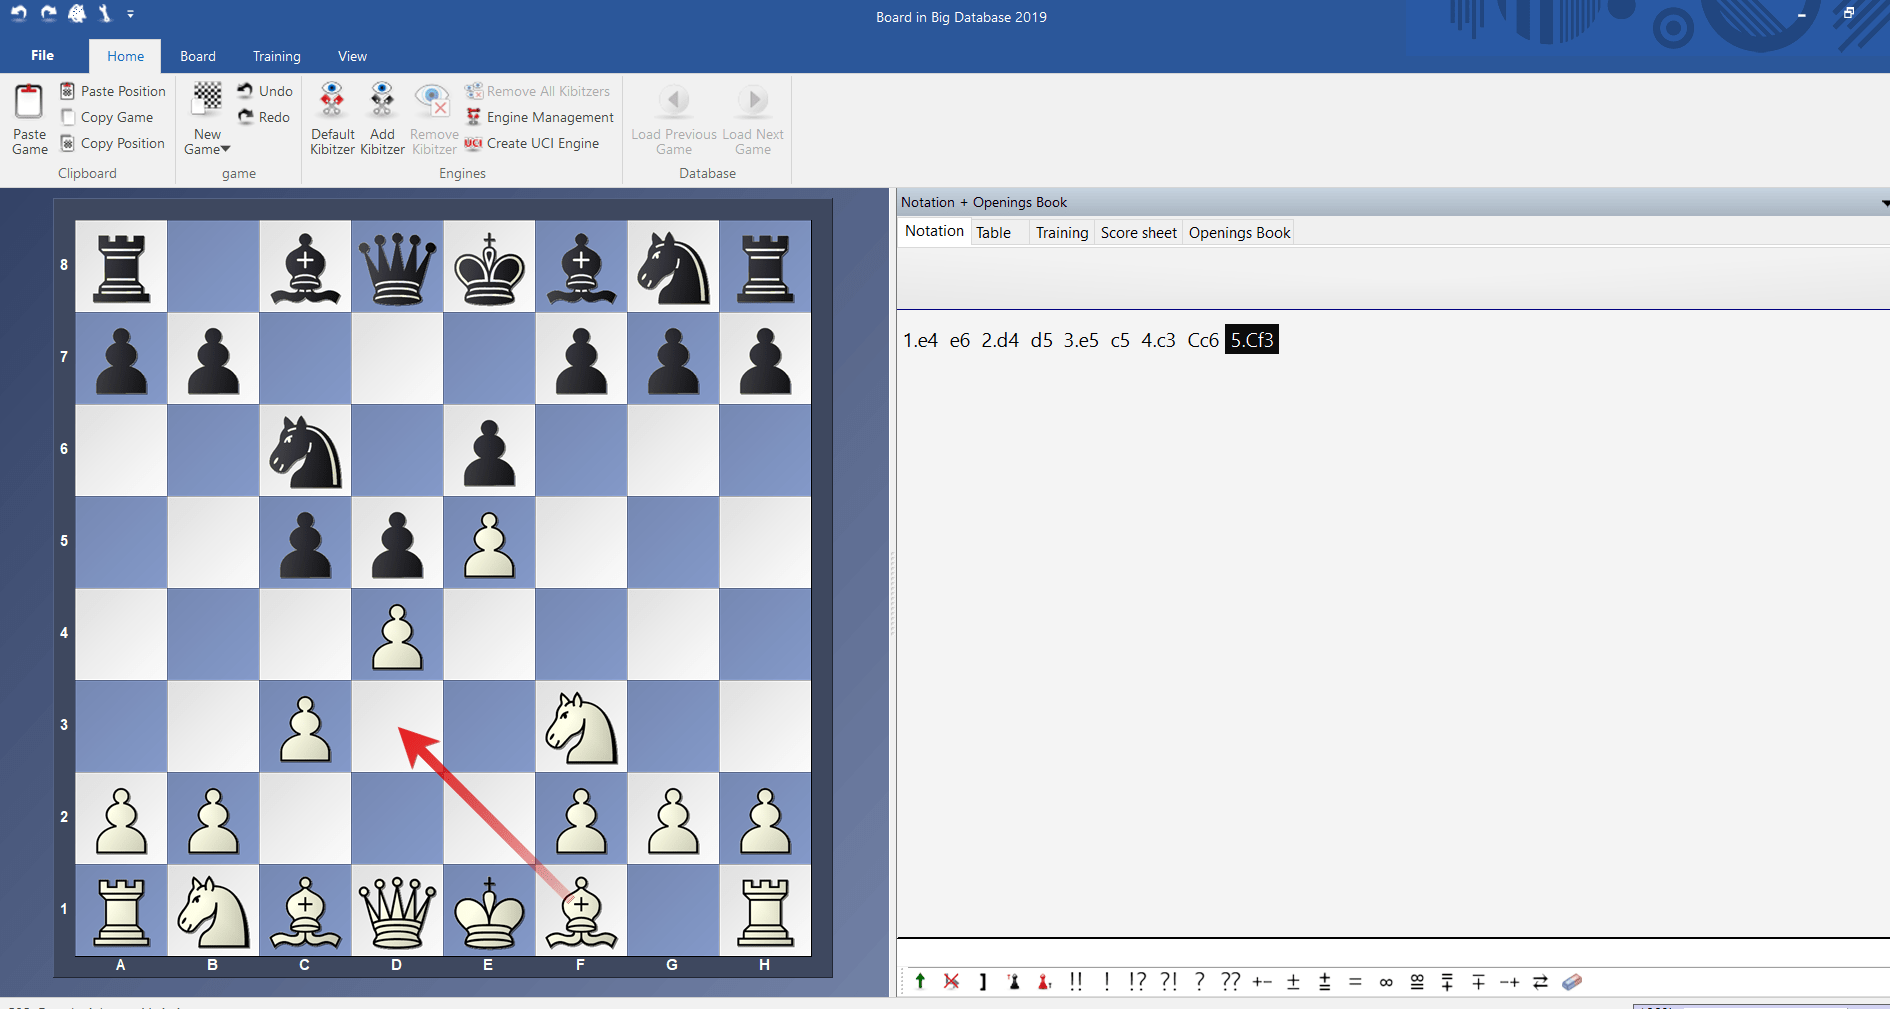 ChessBase Reader 2017